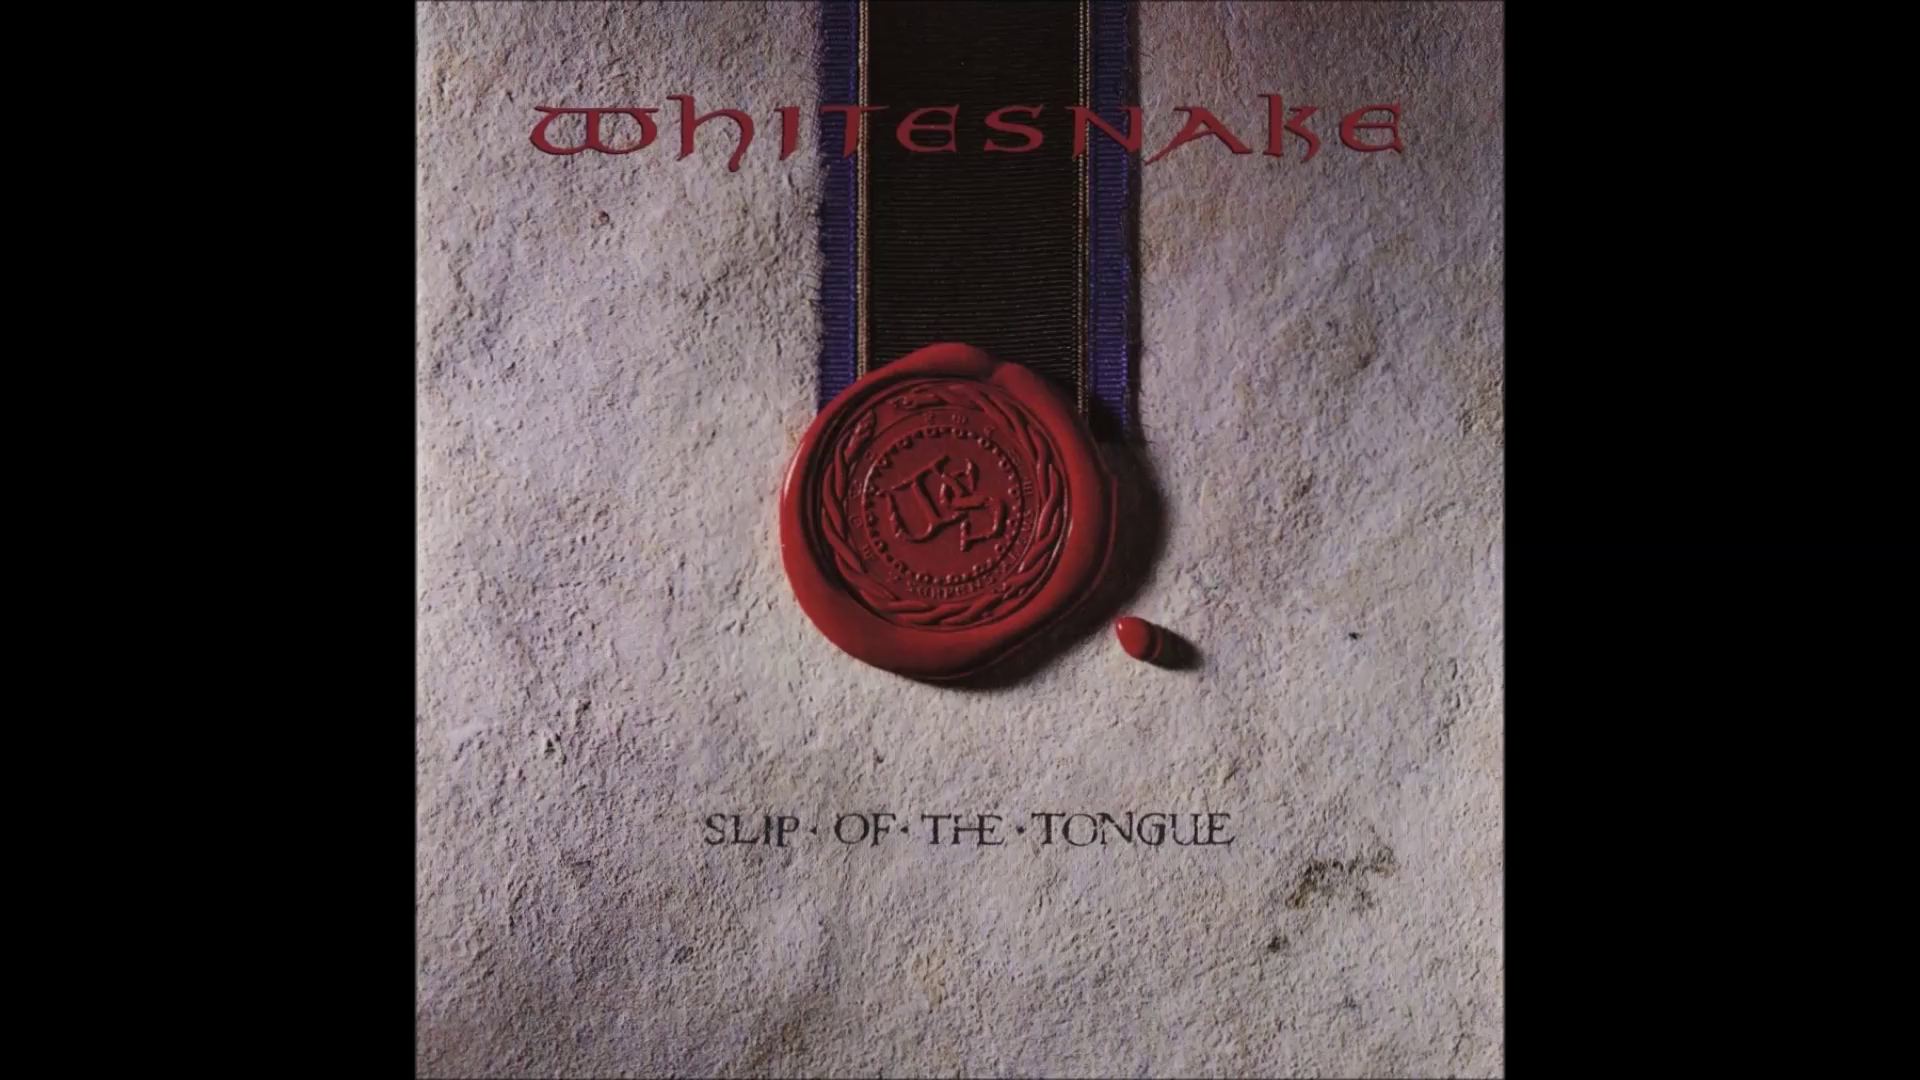 Whitesnake - Slip of the Tongue Full album